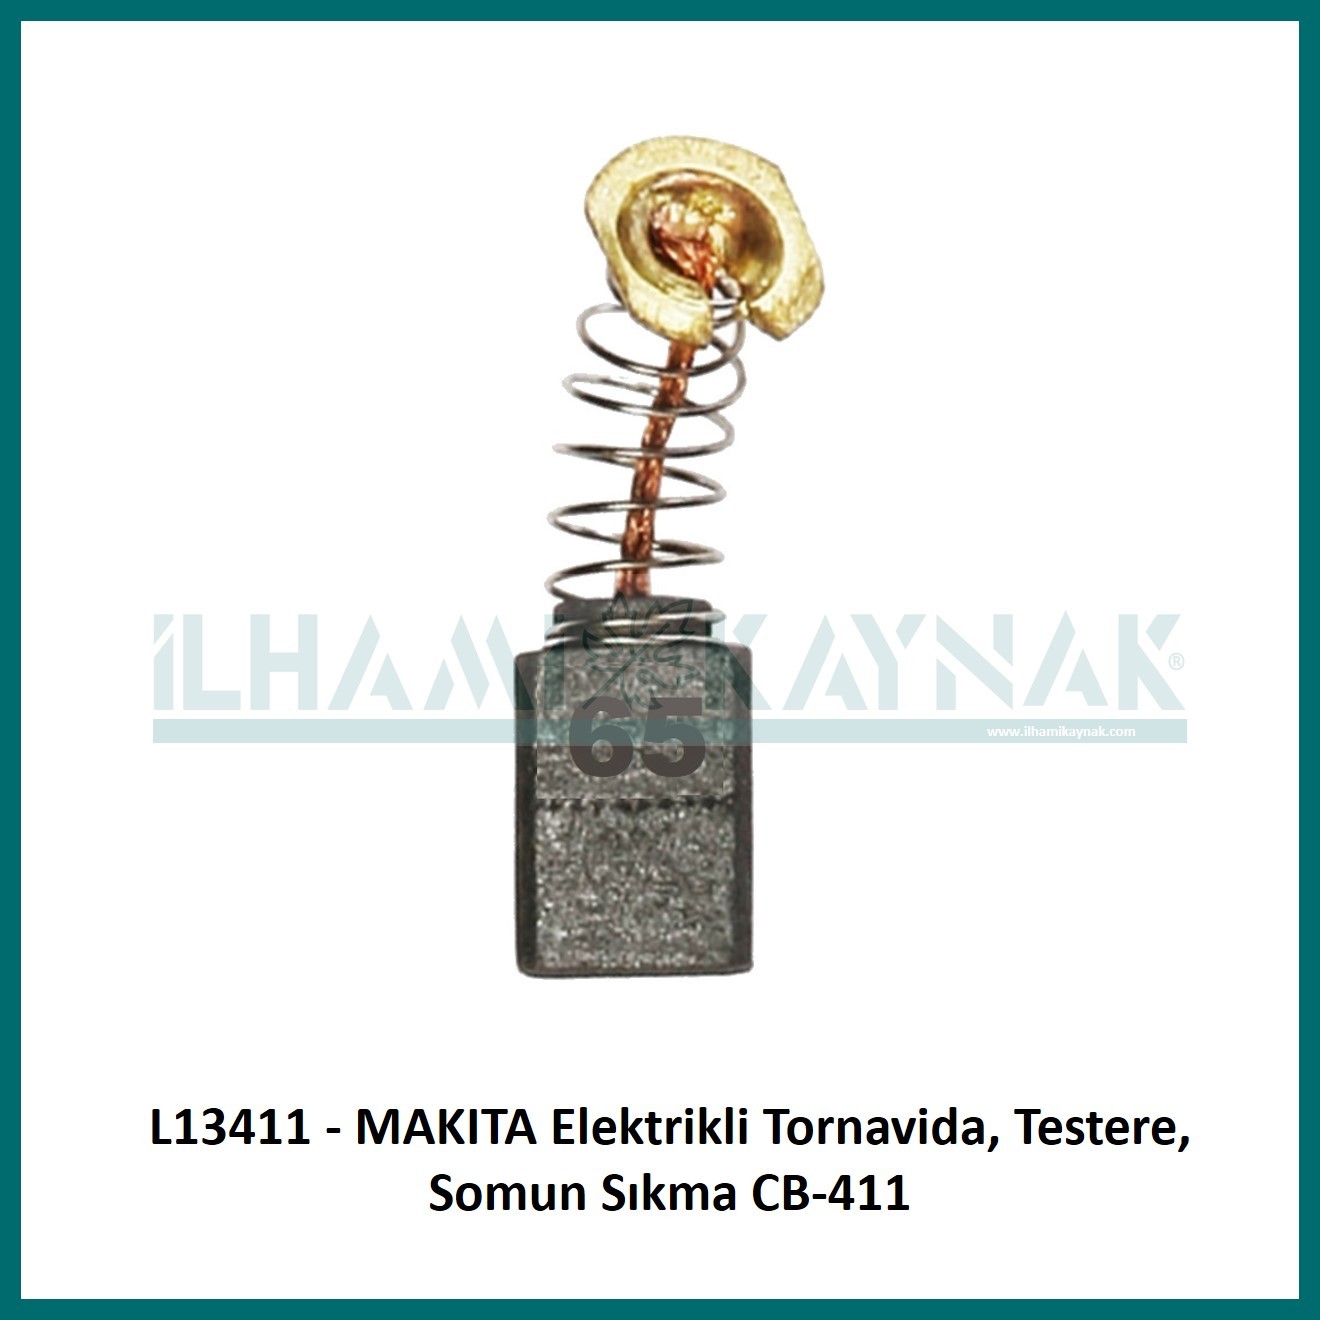 L13411 - MAKITA Elektrikli Tornavida, Testere, Somun Sıkma CB-411 - 6*9*13 mm - 100 Adet